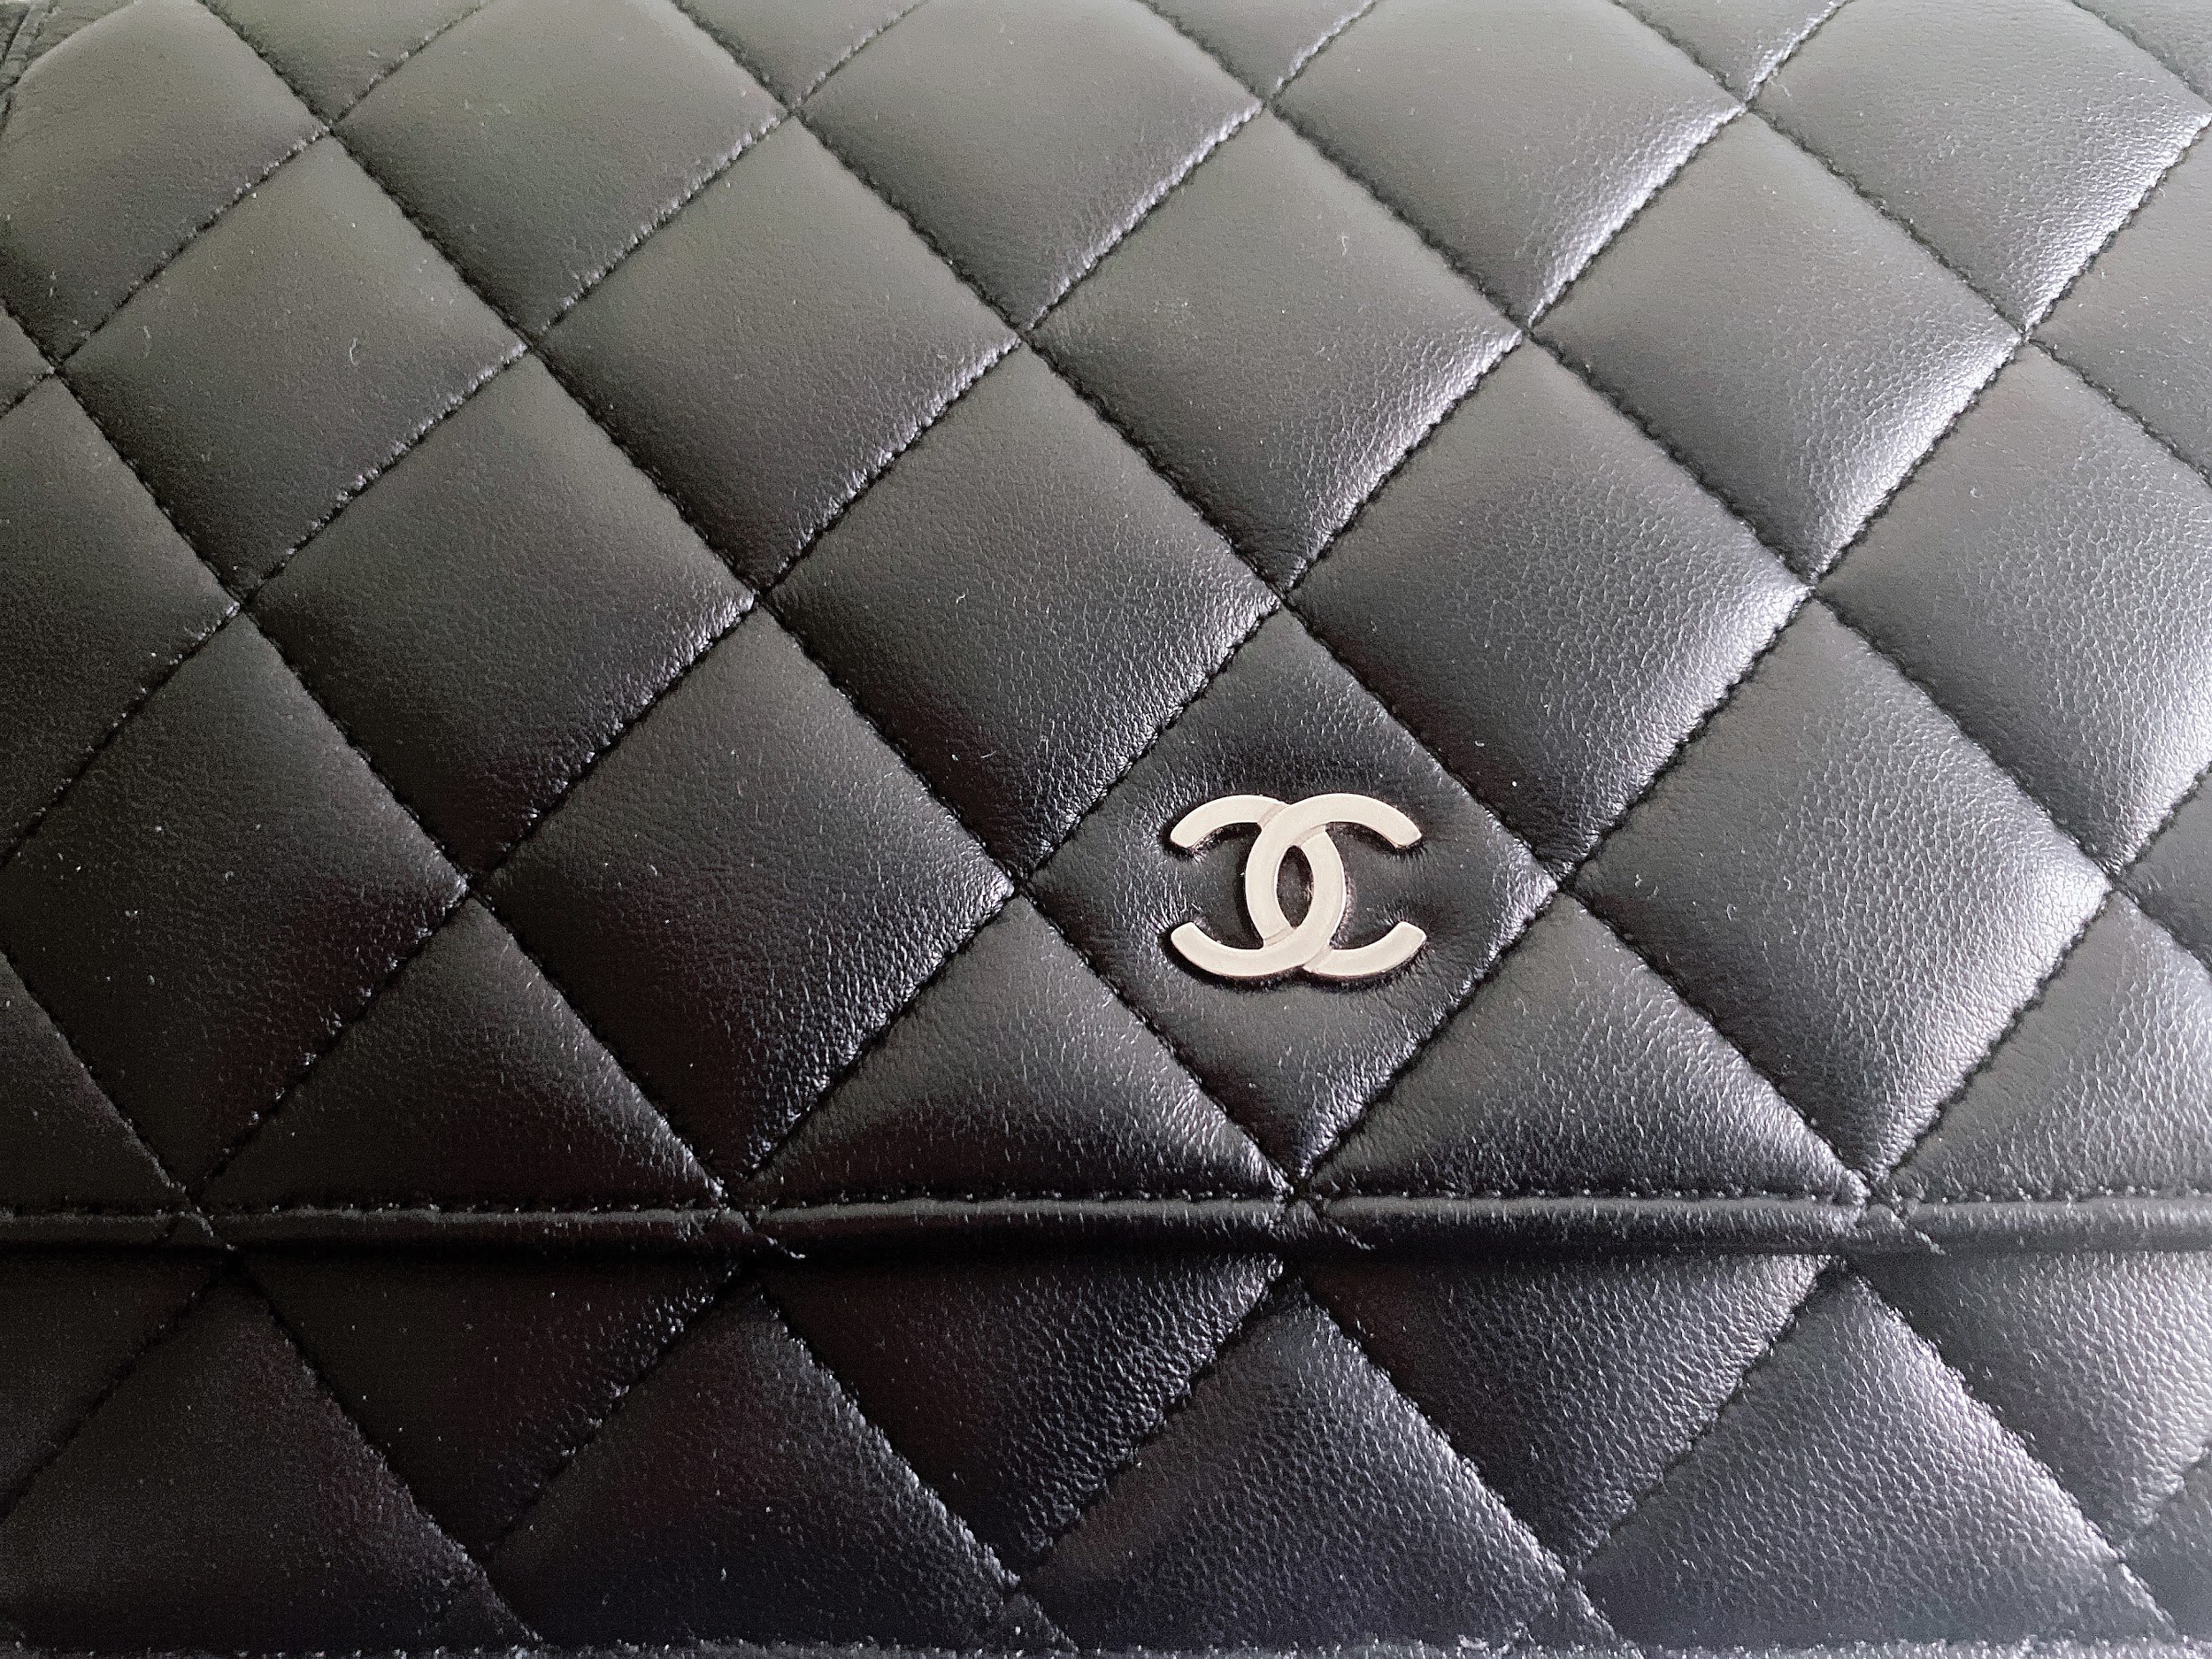 EM CHANGE Blog - Authentifizierung von Chanel